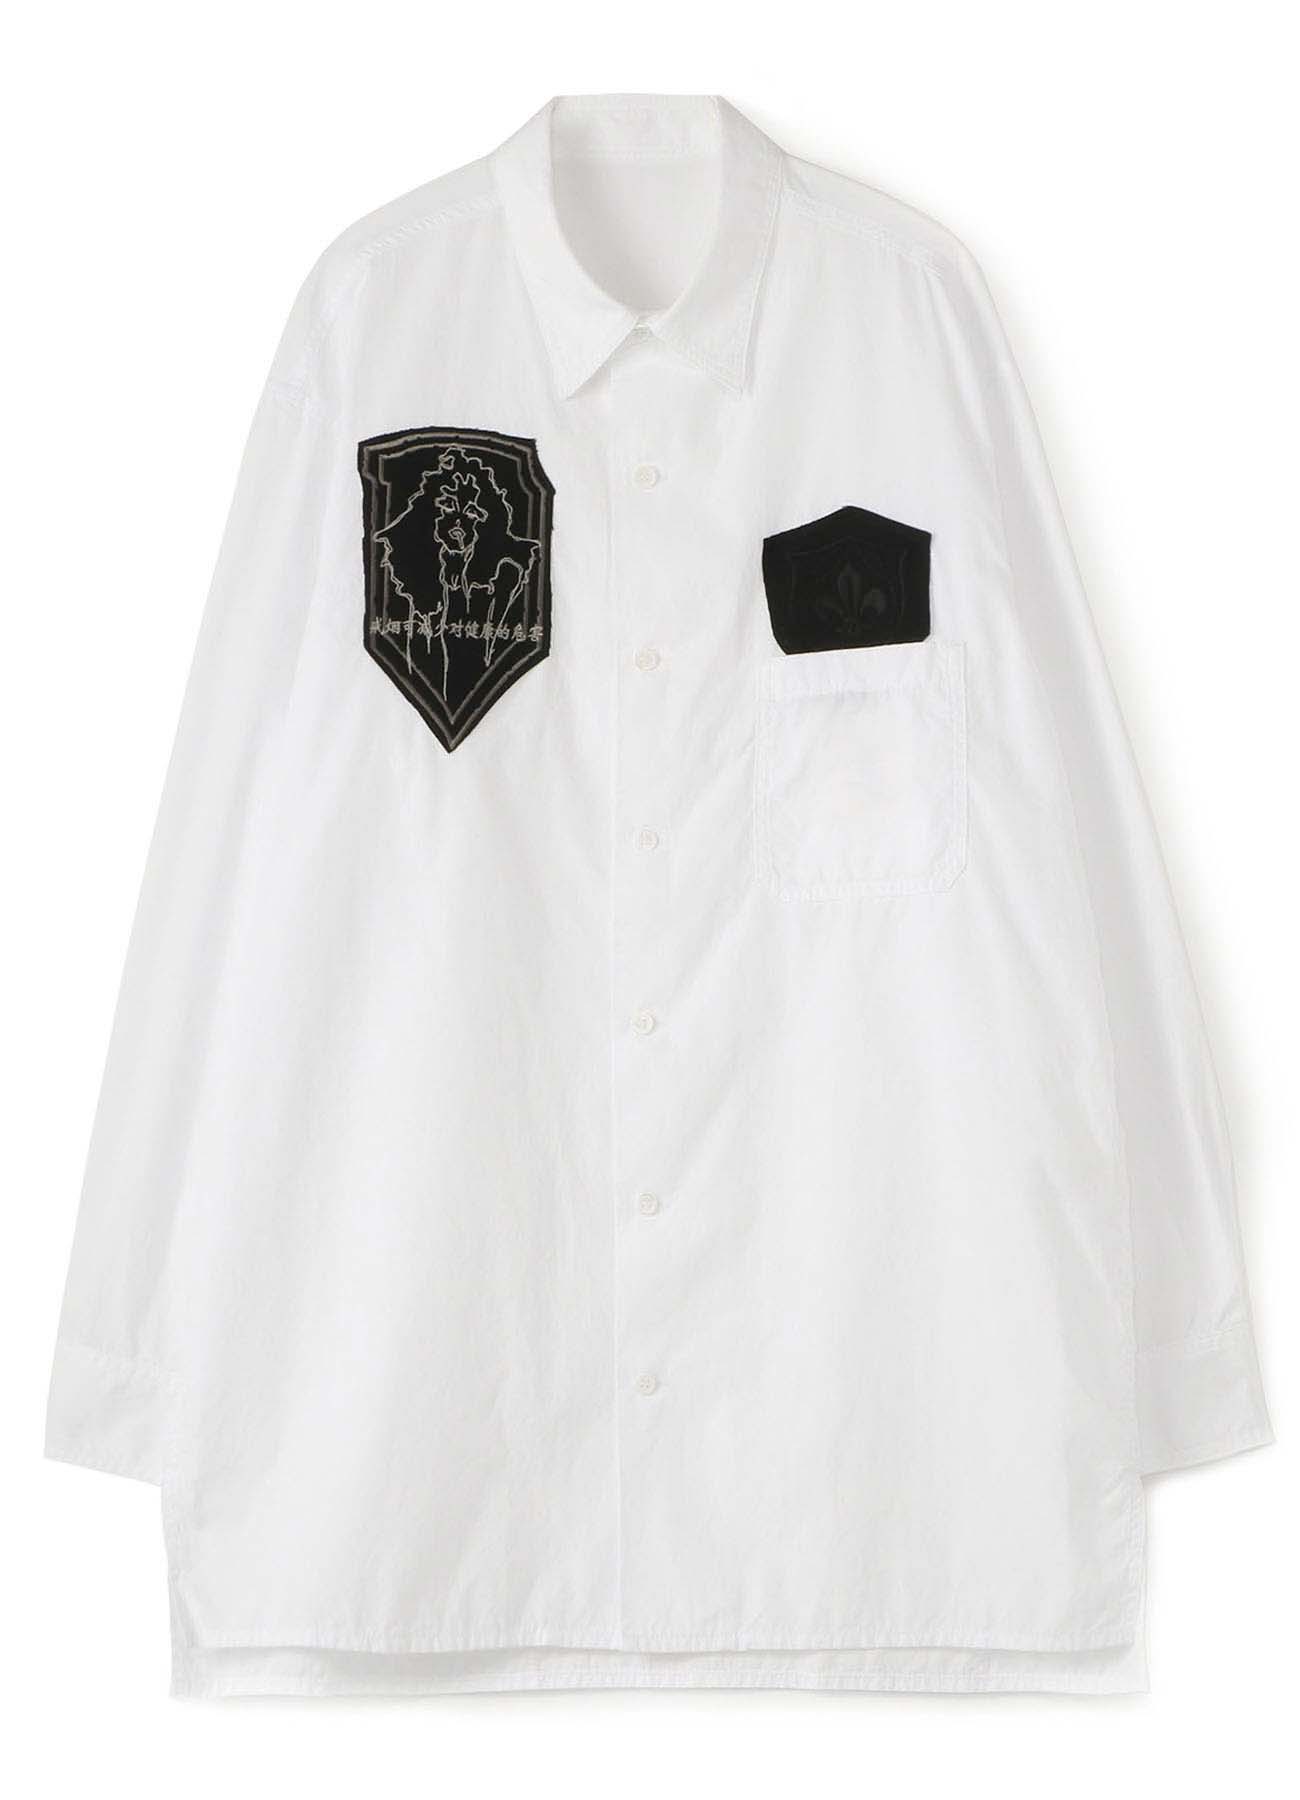 B Yohji Yamamoto One Of A Kind Patch Shirt M White Vintage The Shop Yohji Yamamoto